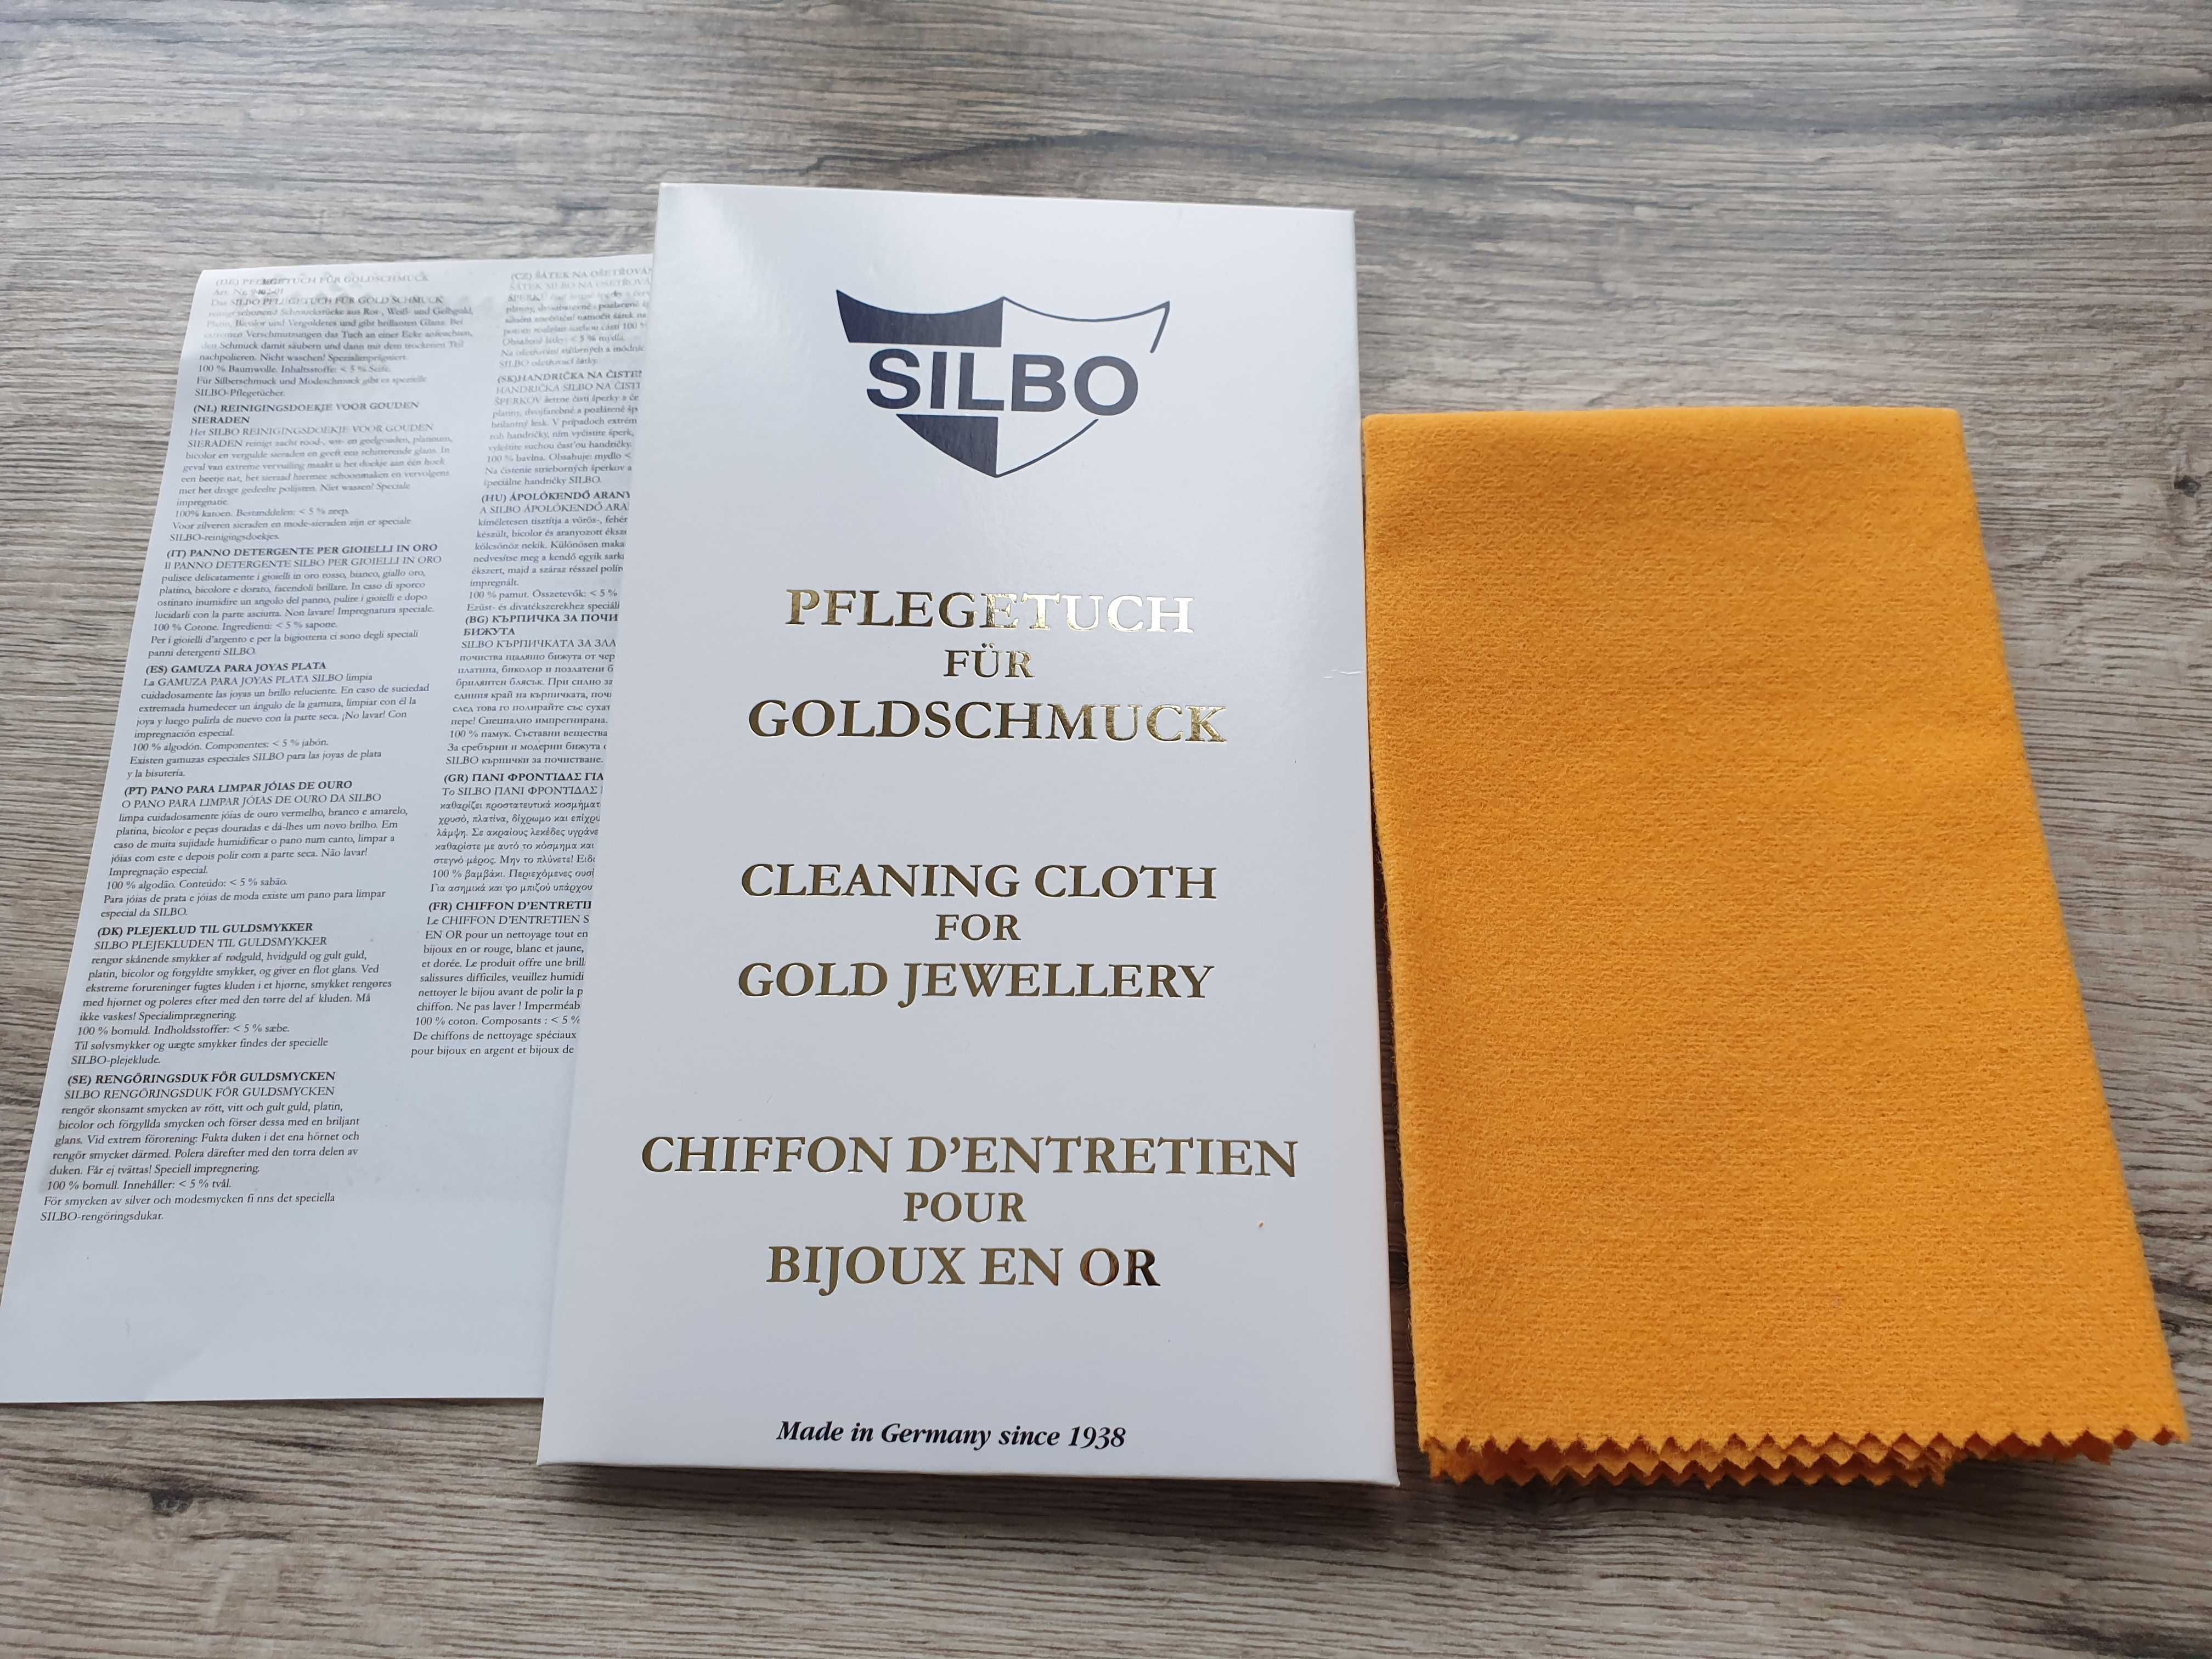 Ткань SILBO для чистки ювелирных изделий из , золота